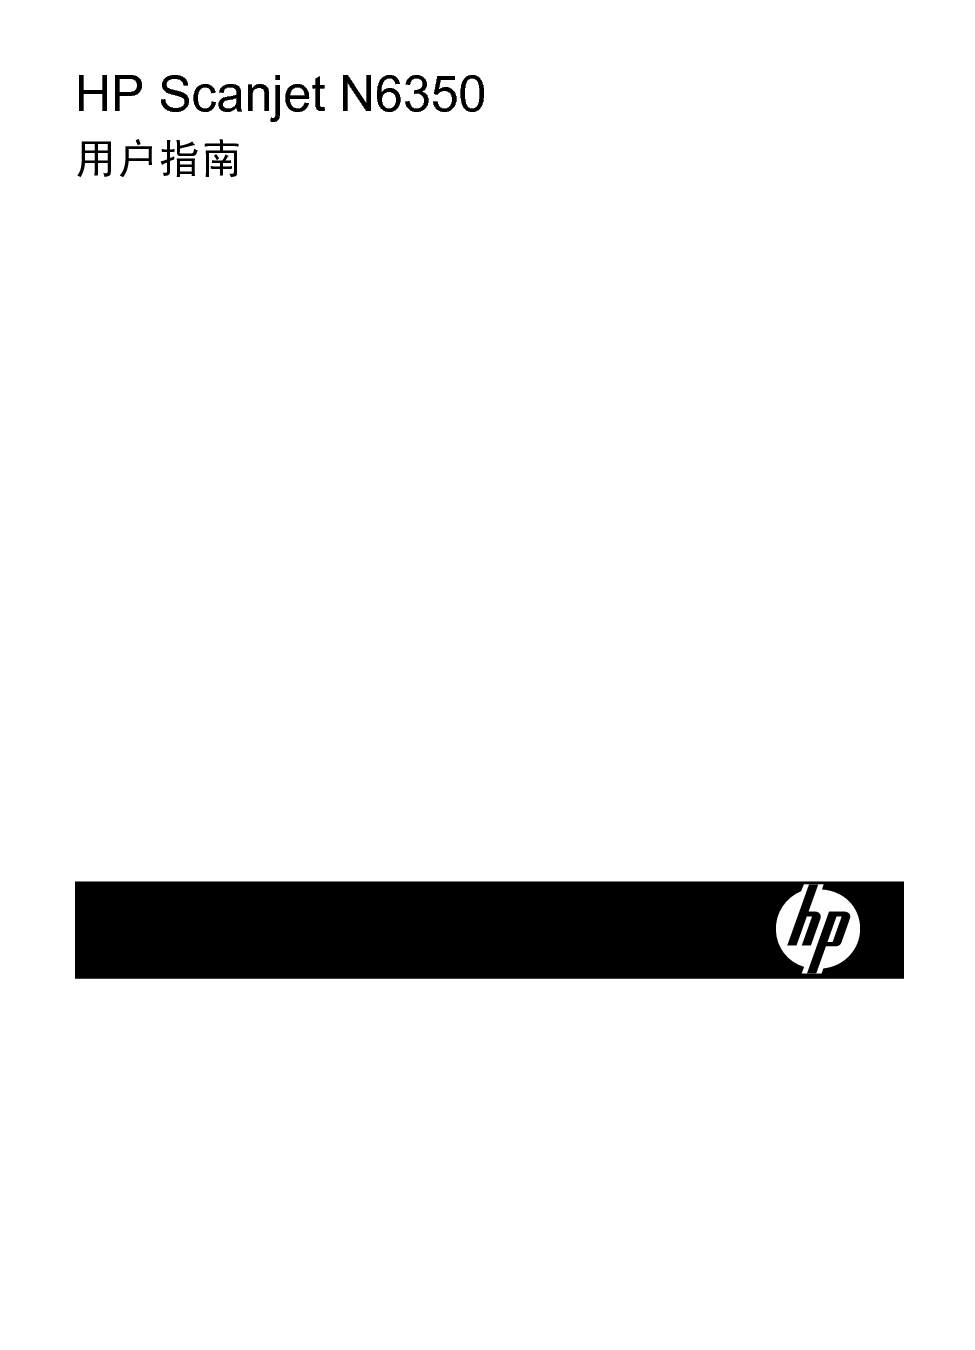 惠普 HP Scanjet N6350 用户指南 封面